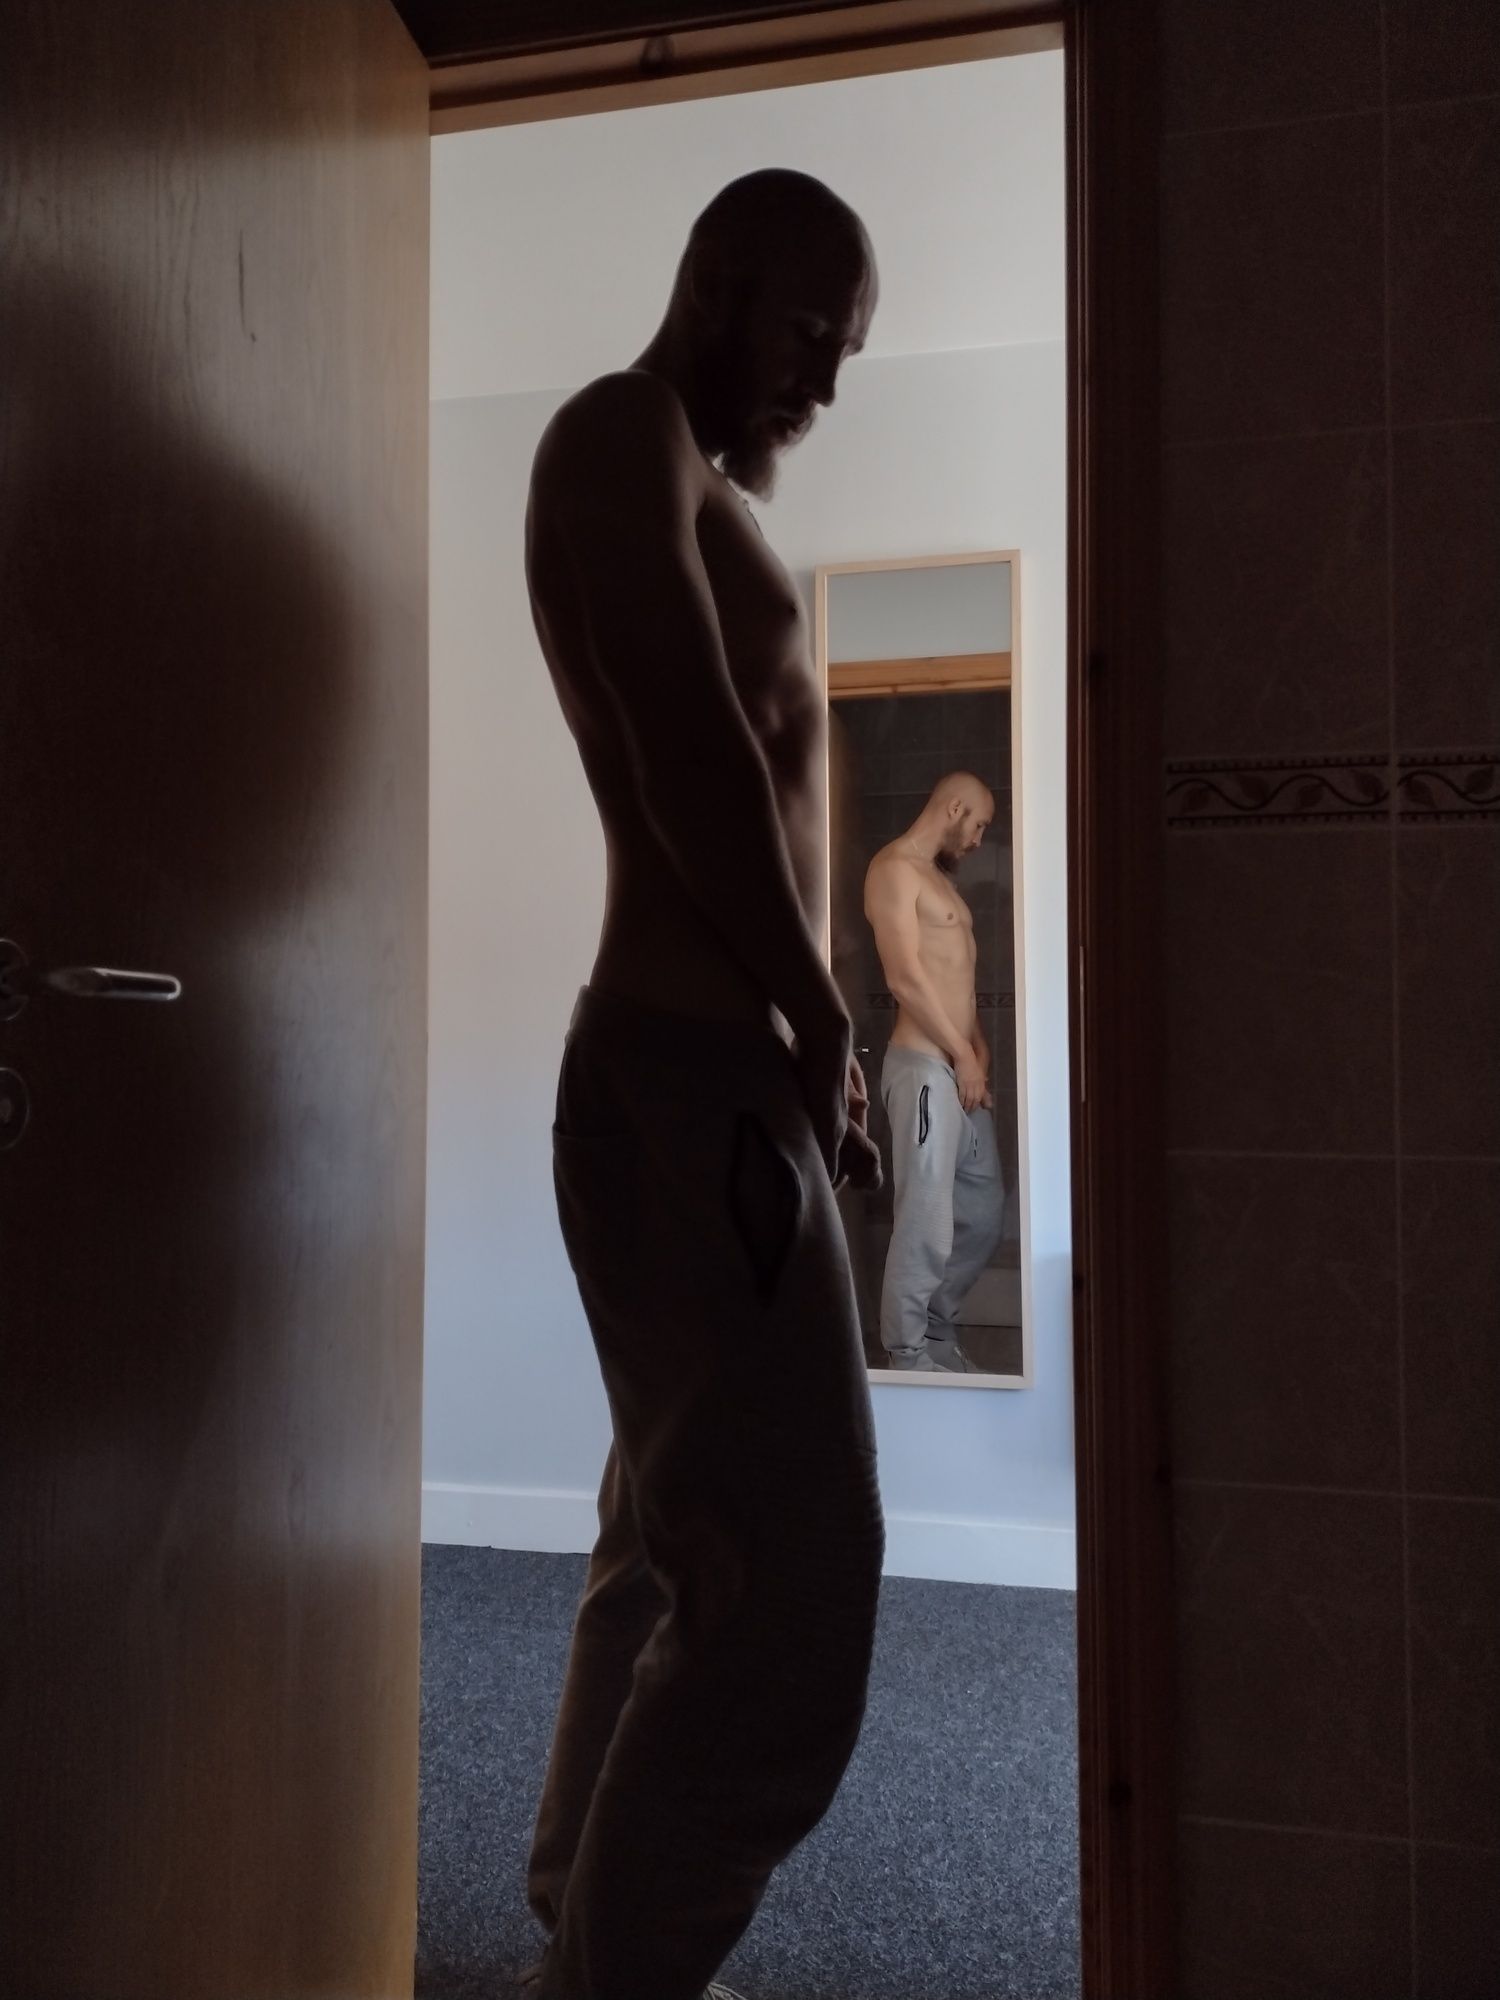 Posing nude in doorway #4